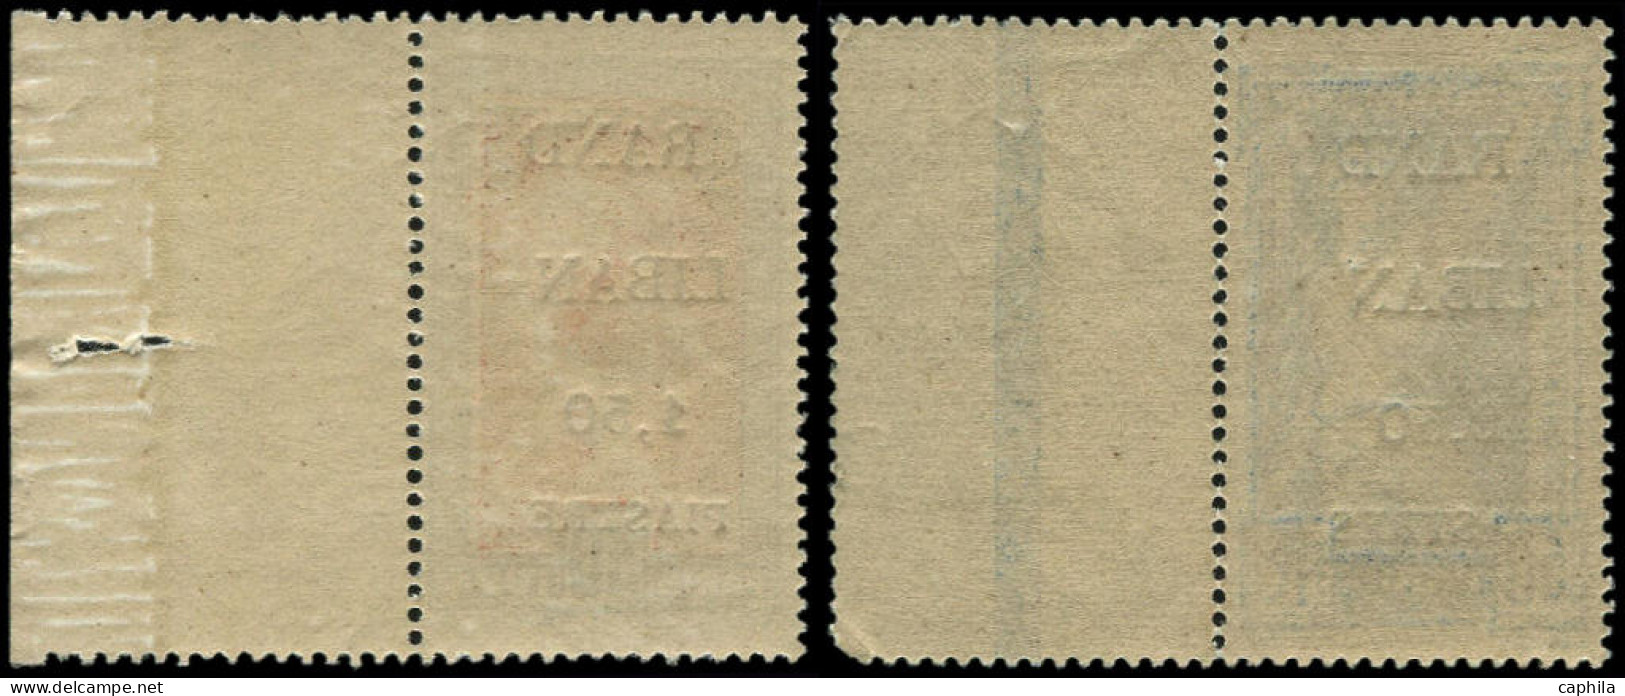 ** GRAND LIBAN - Poste - 20b + 21c, "G" Maigre, Bdf: Jeux Olympiques De Paris 1924 - Ungebraucht